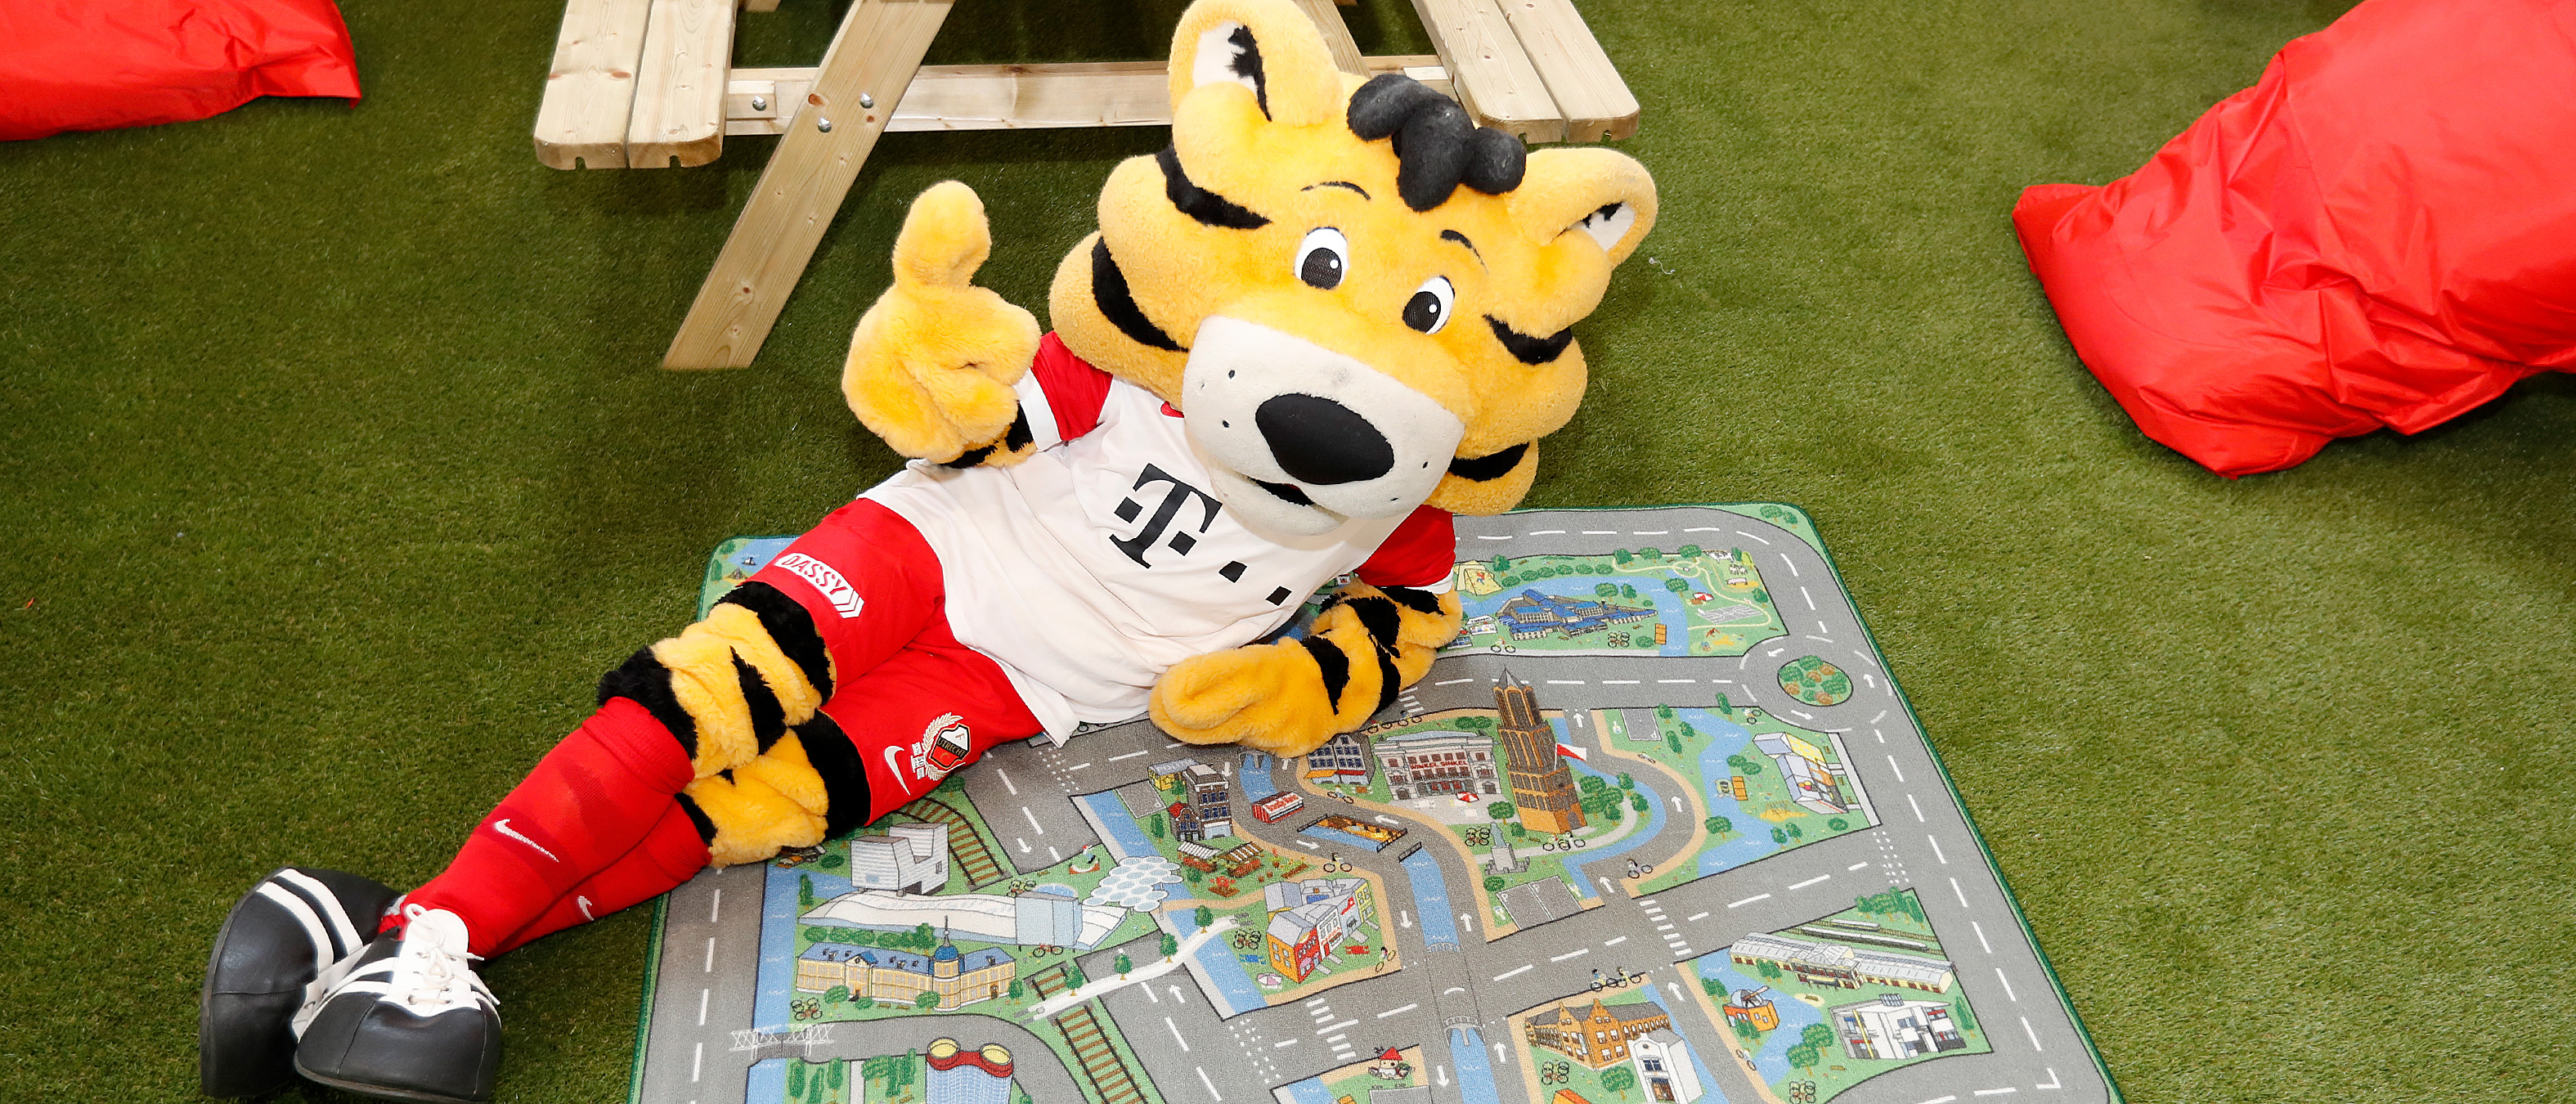 Tiger en Tigergirl hebben een eigen huisje gebouwd in Stadion Galgenwaard